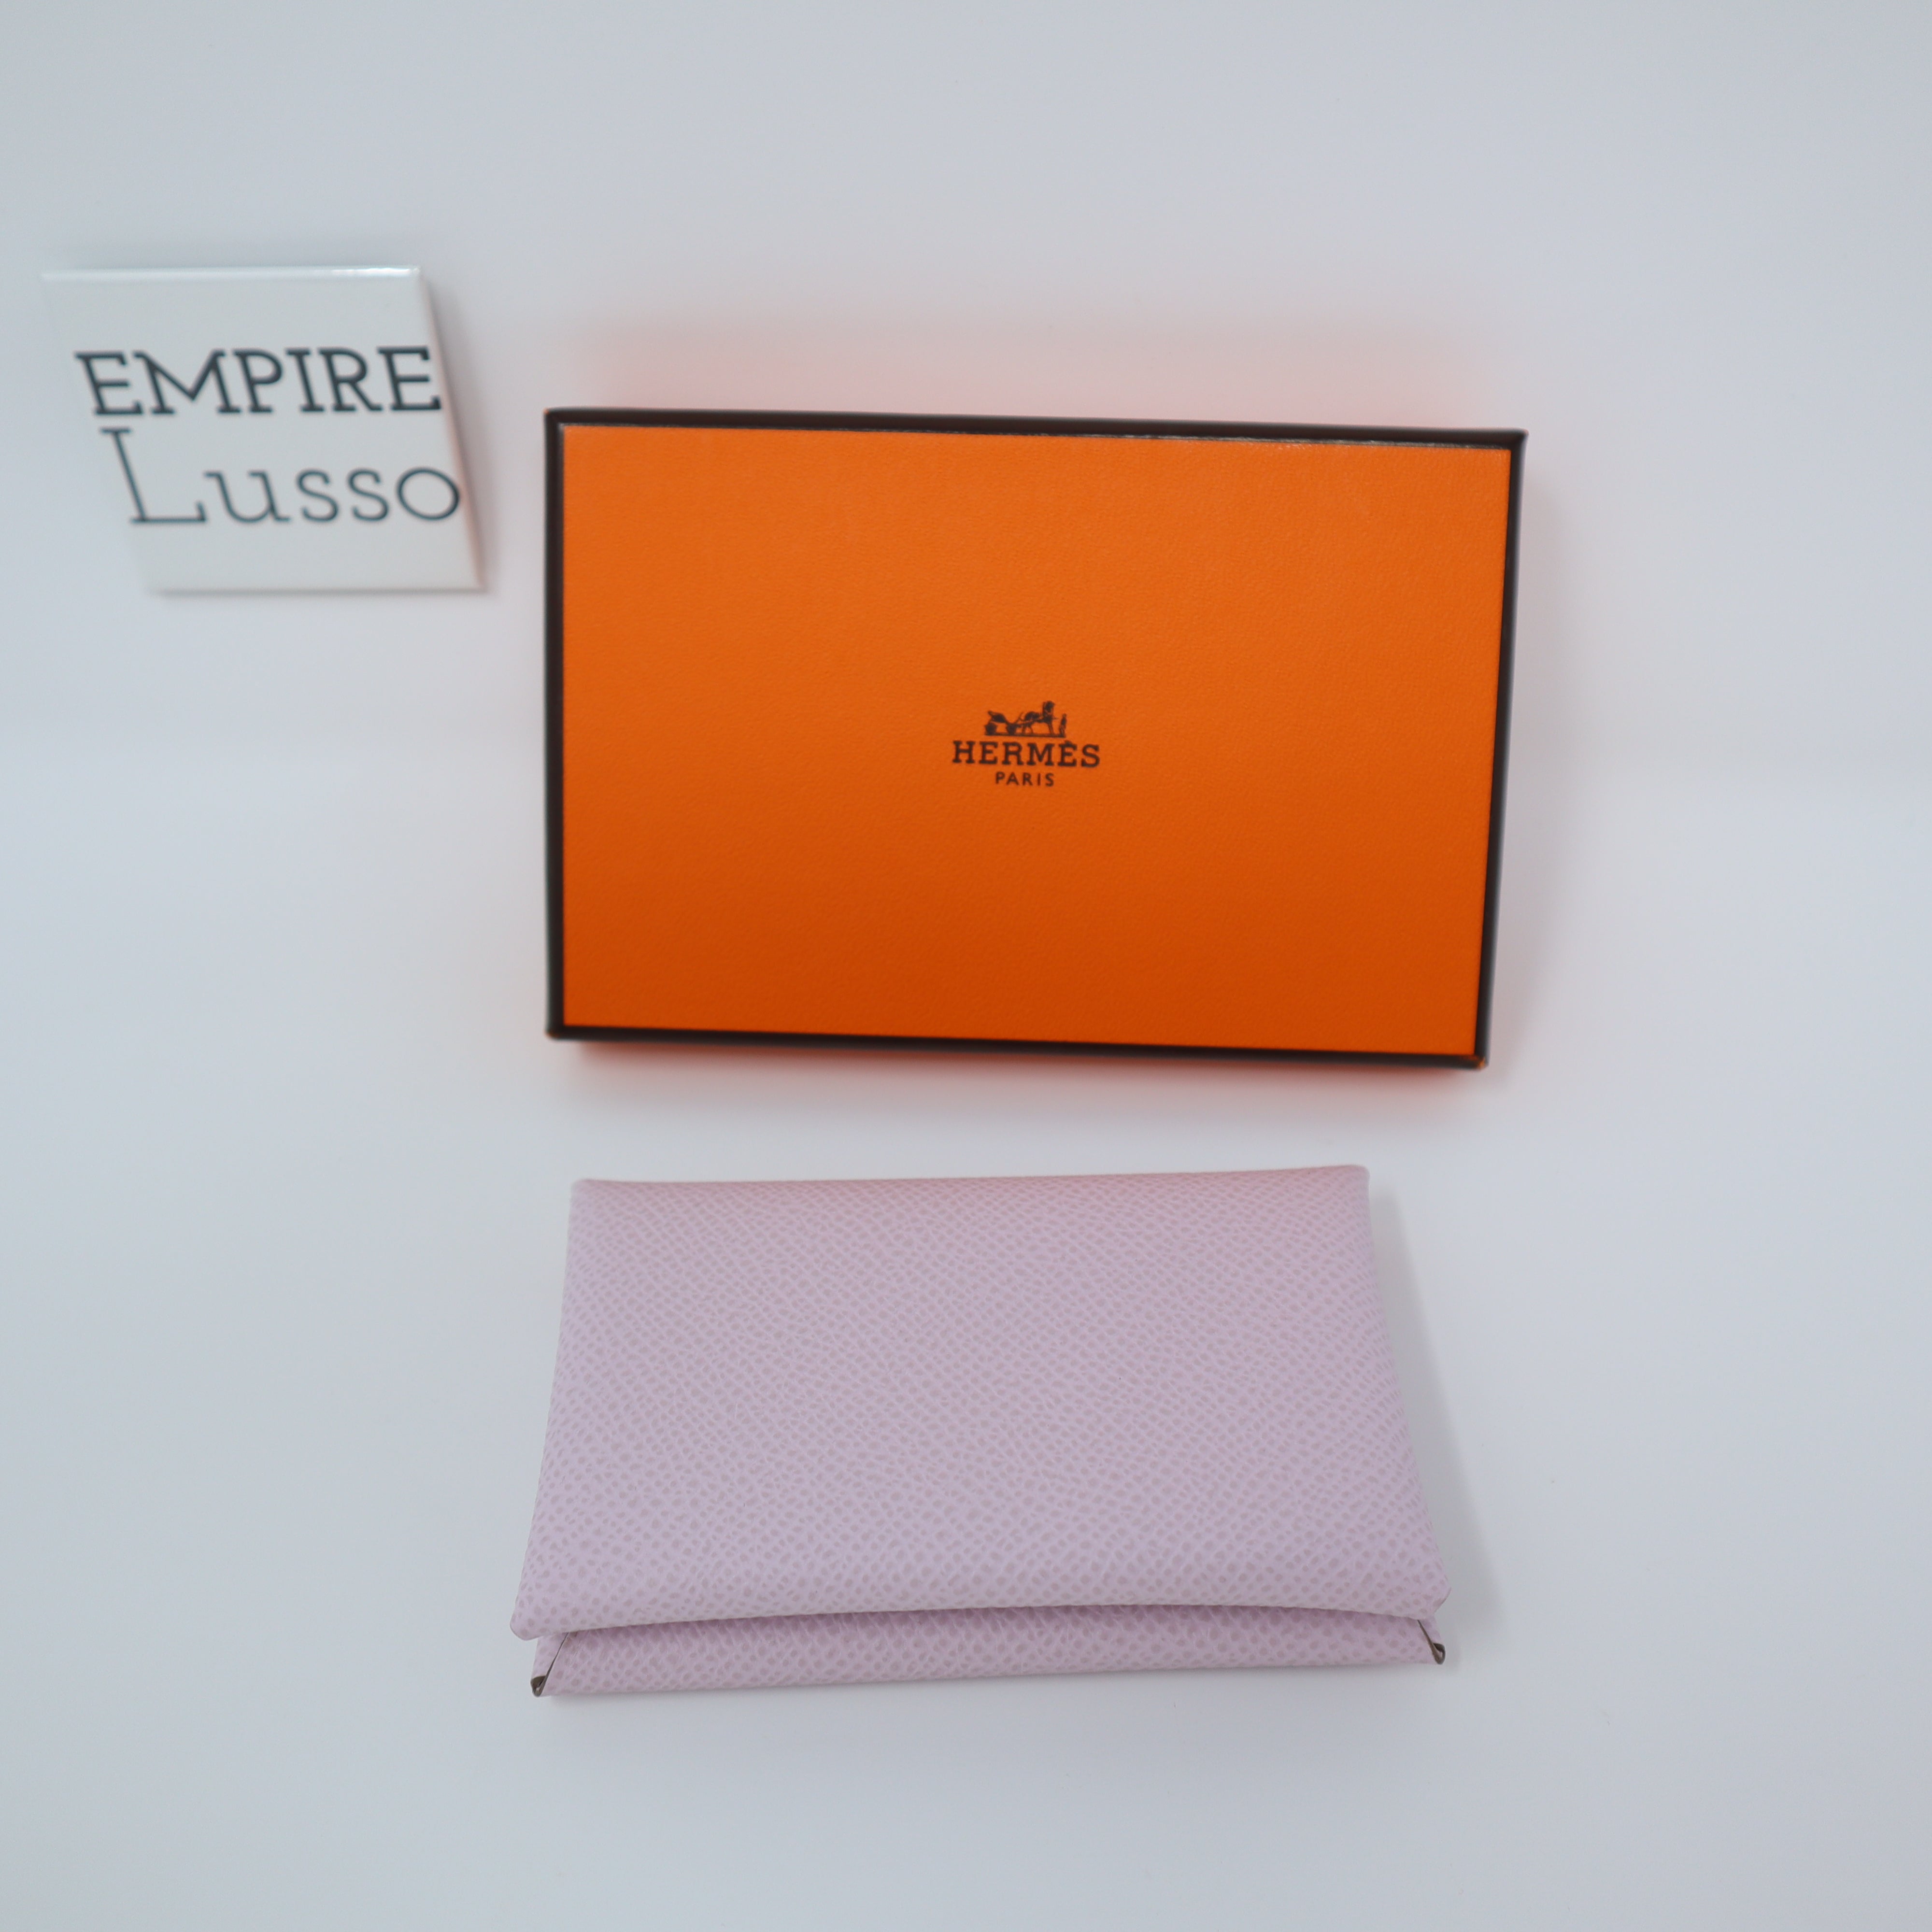 Calvi pouch/7900HKD Pouch in Epsom - We love Hermes